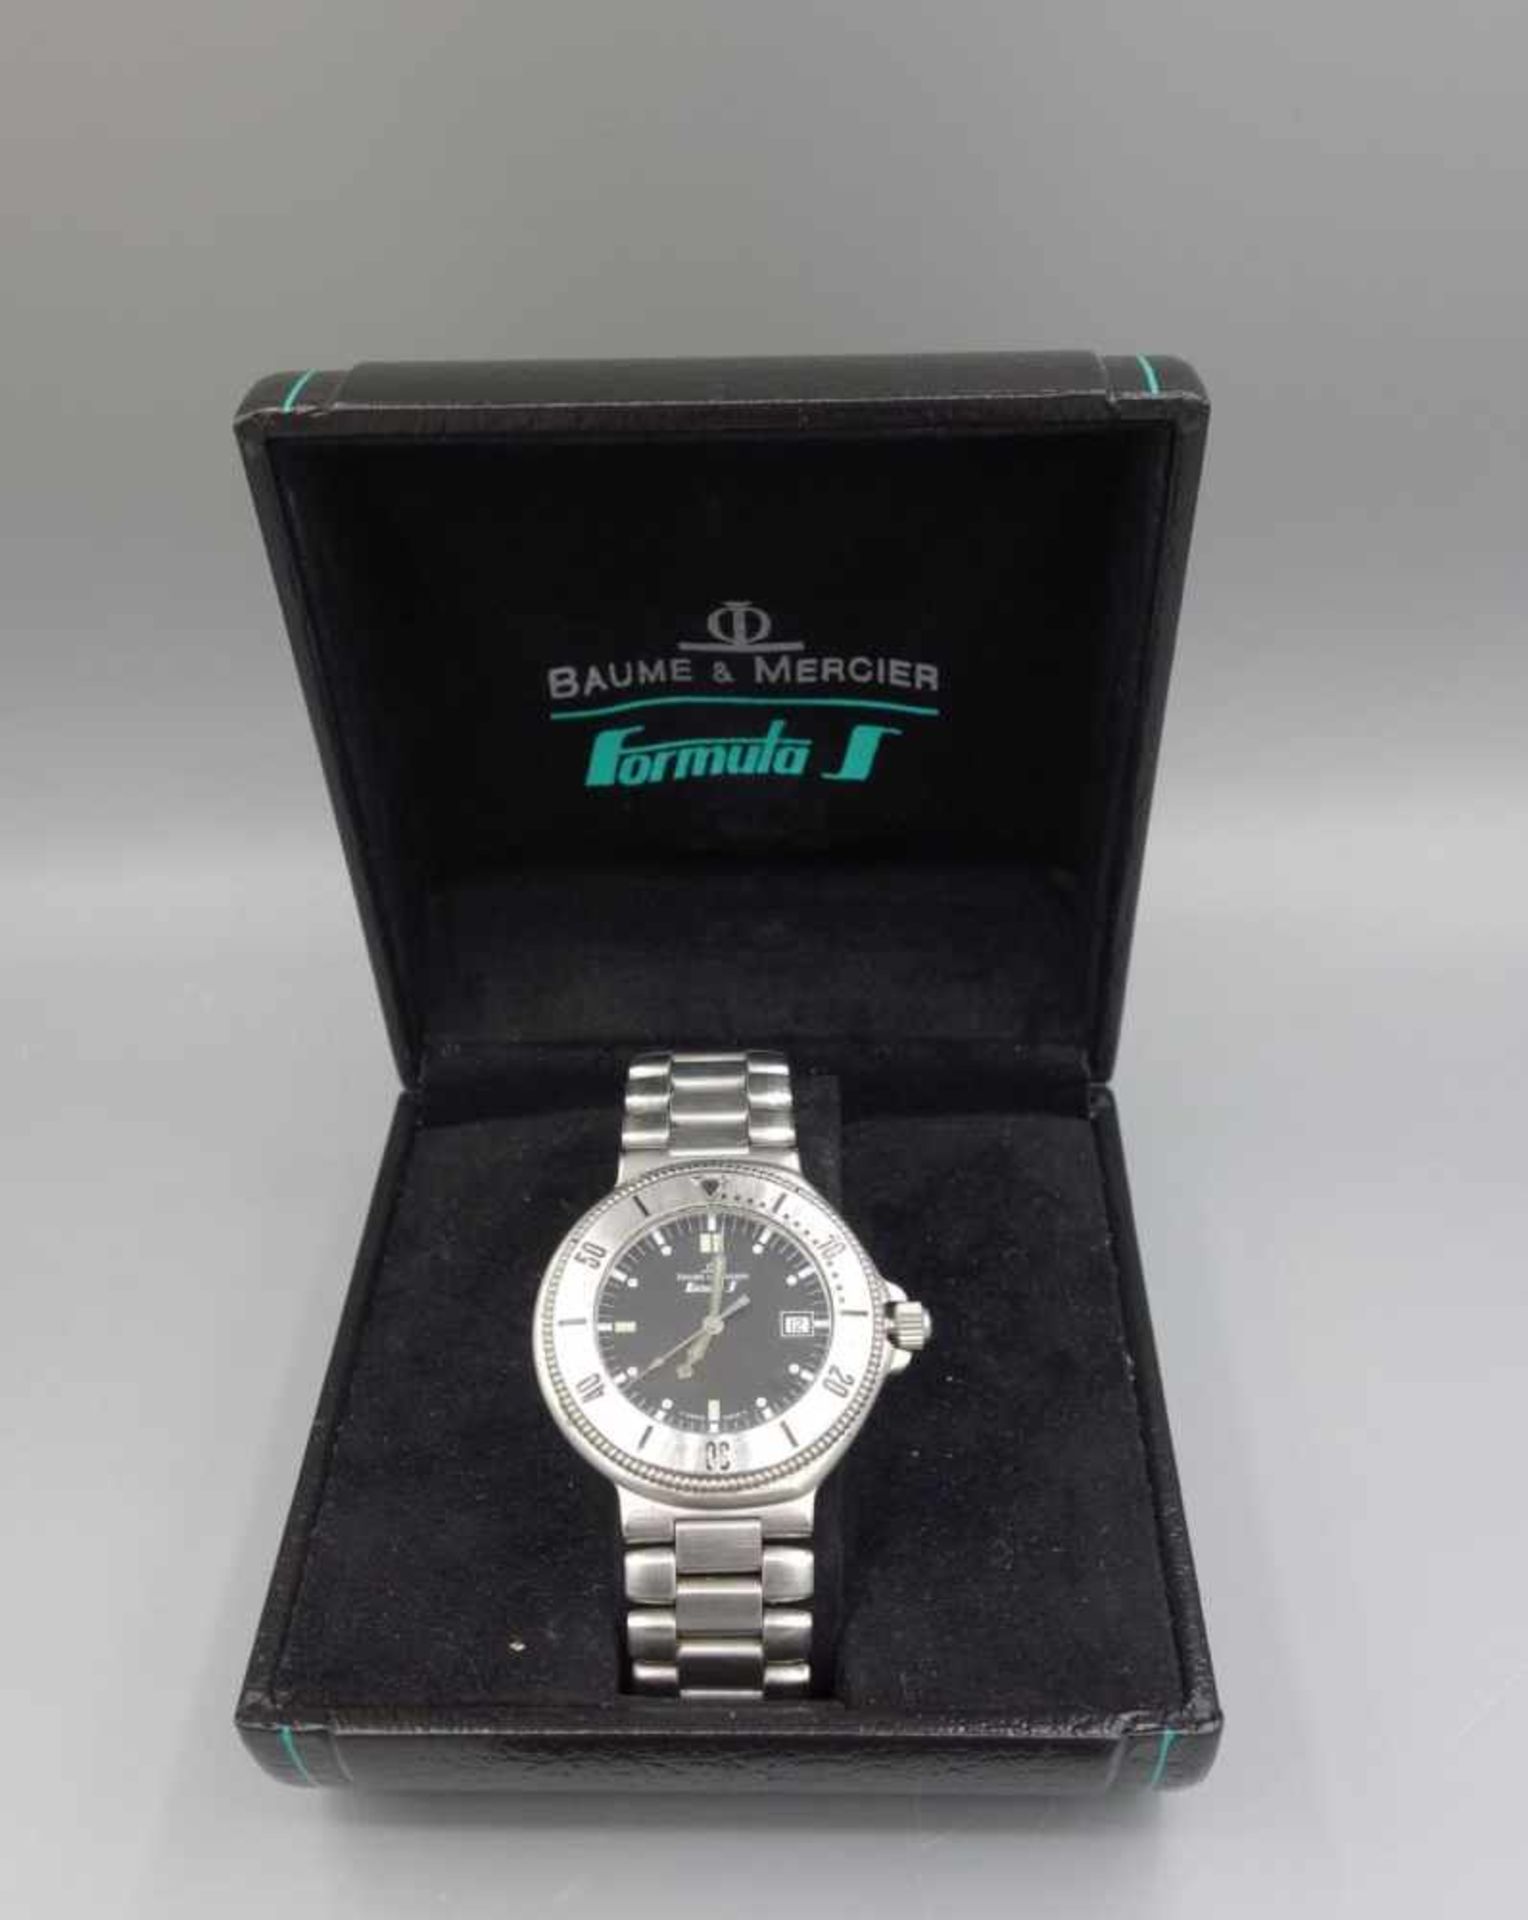 ARMBANDUHR / TAUCHERUHR: BAUME & MERCIER - FORMULA S / wristwatch, Quartz-Uhr, Manufaktur Baume &